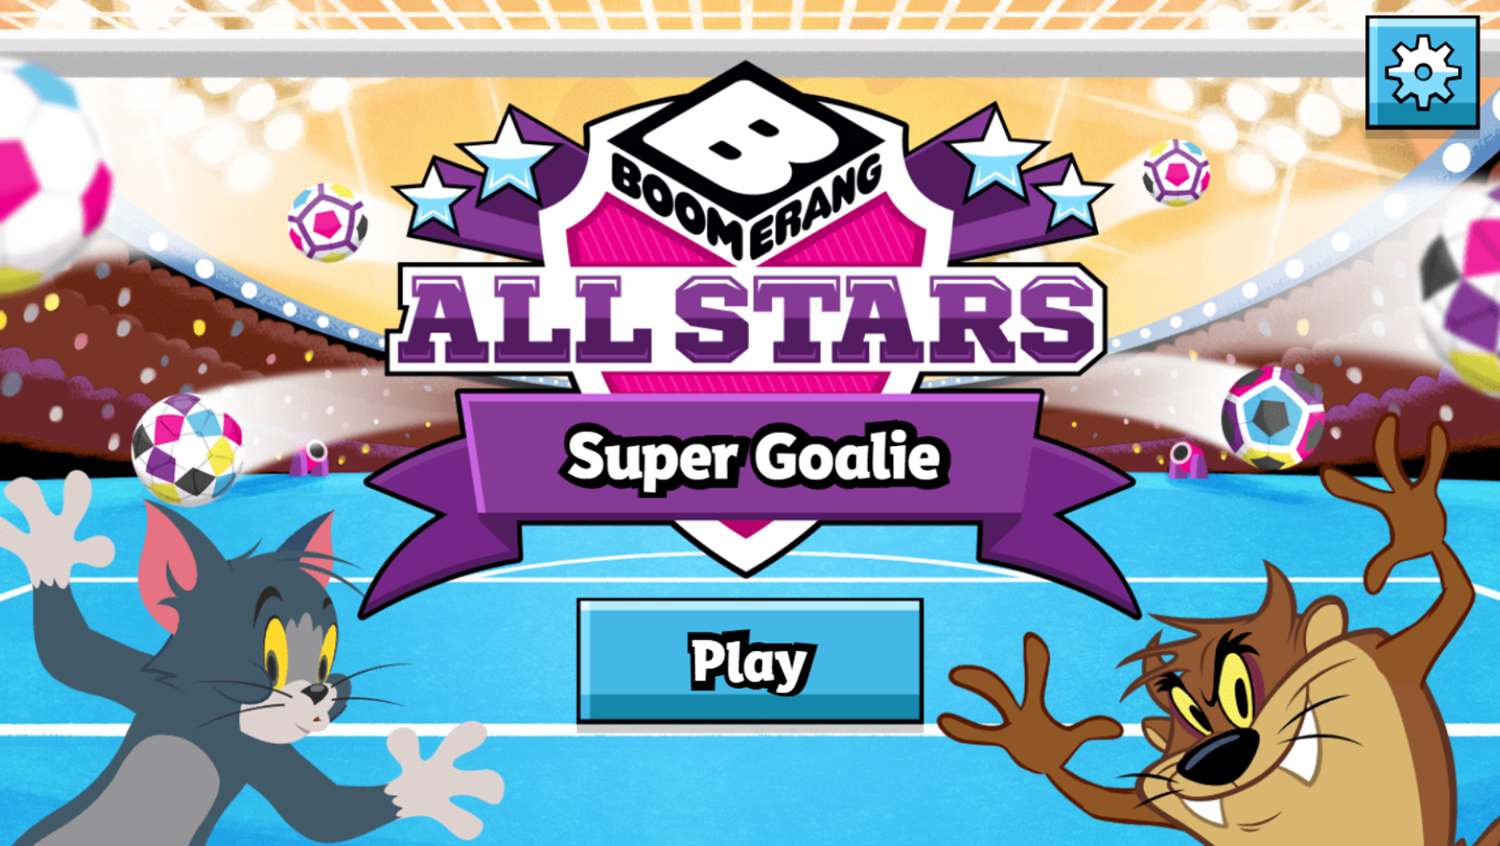 Boomerang All Stars Super Goalie Game Welcome Screen Screenshot.